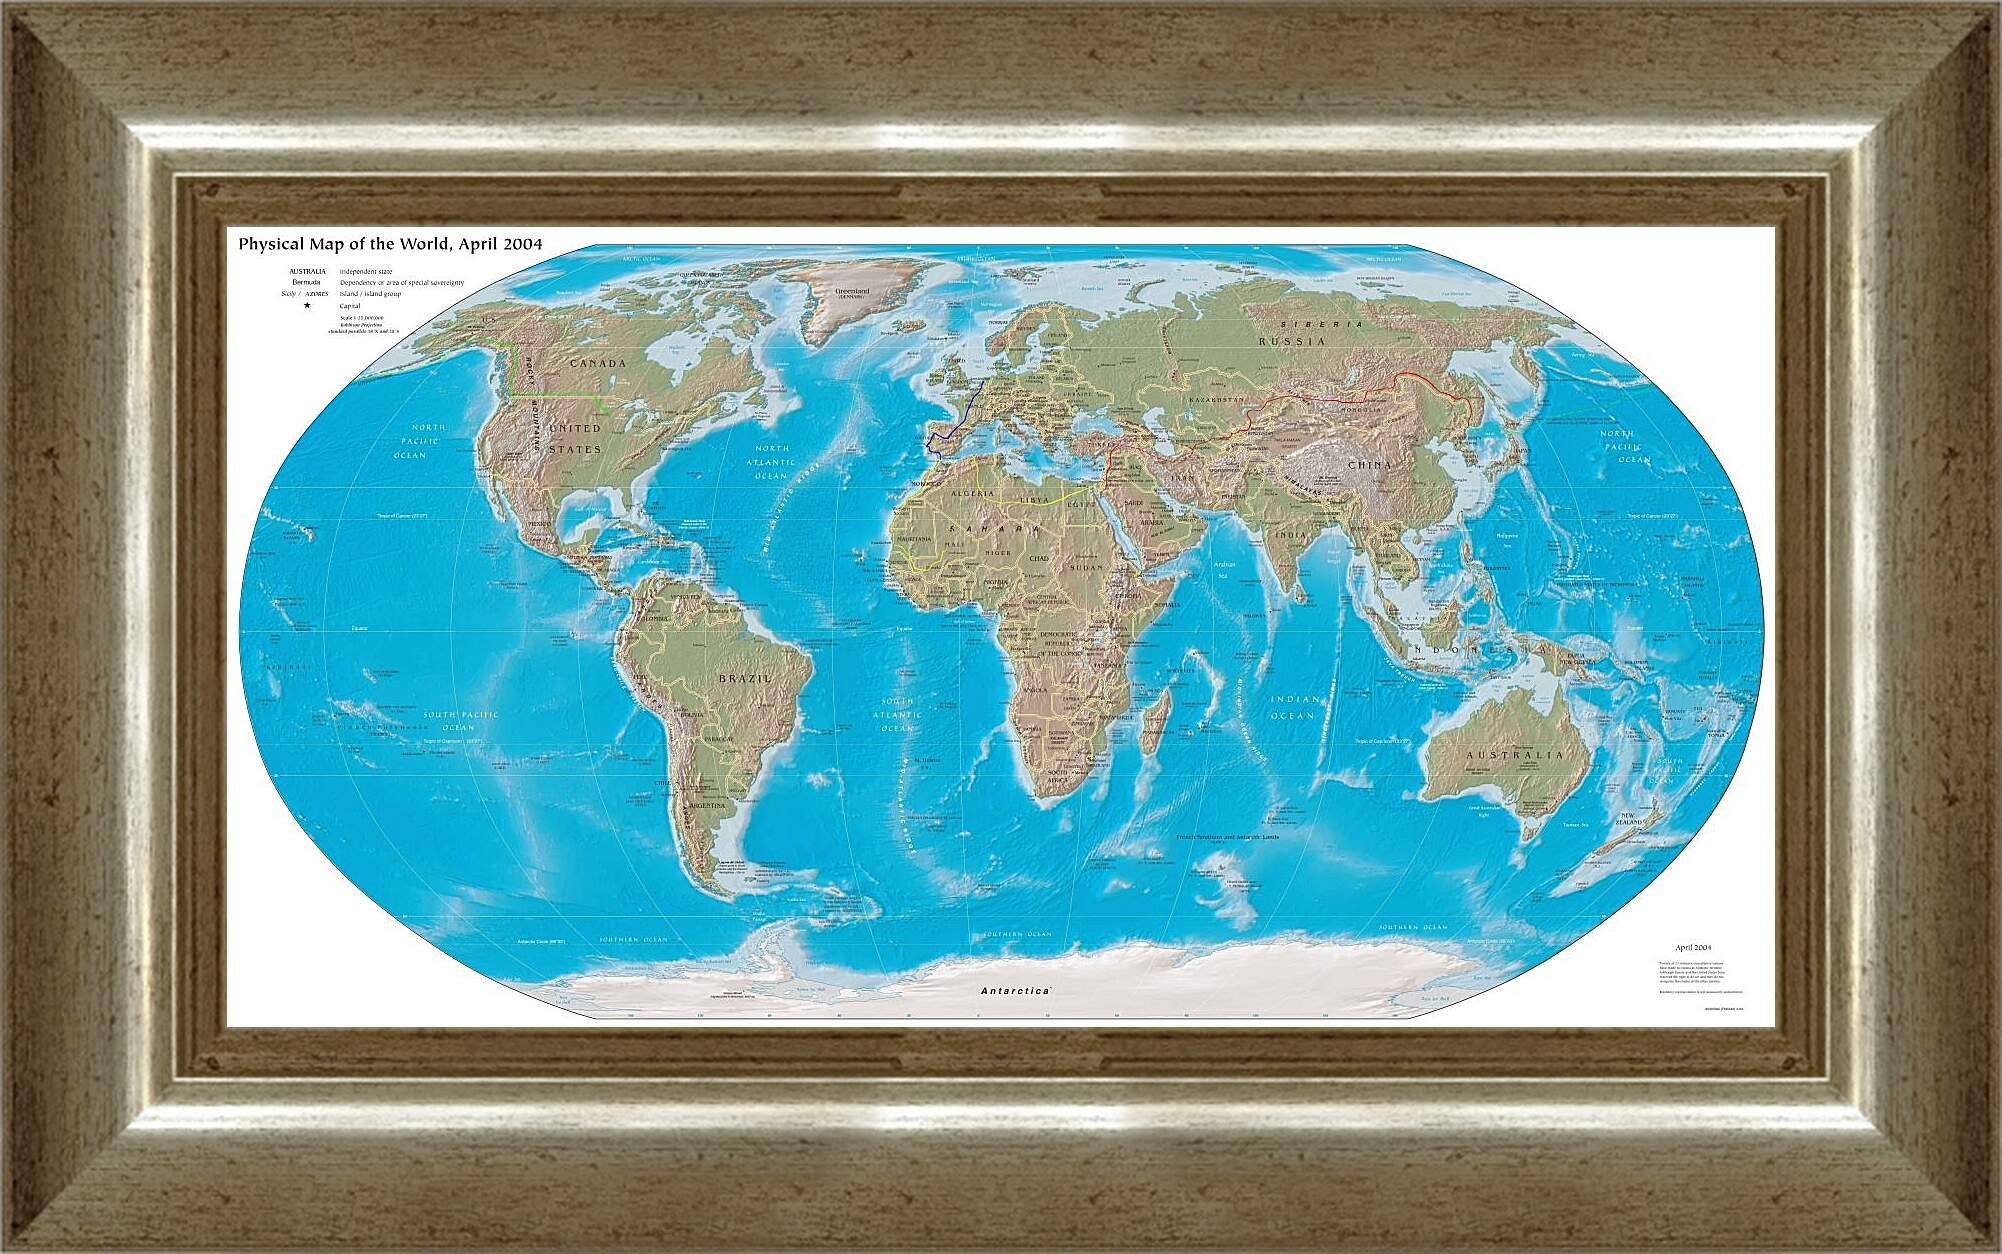 Картина в раме - Физическая карта мира, апрель 2004